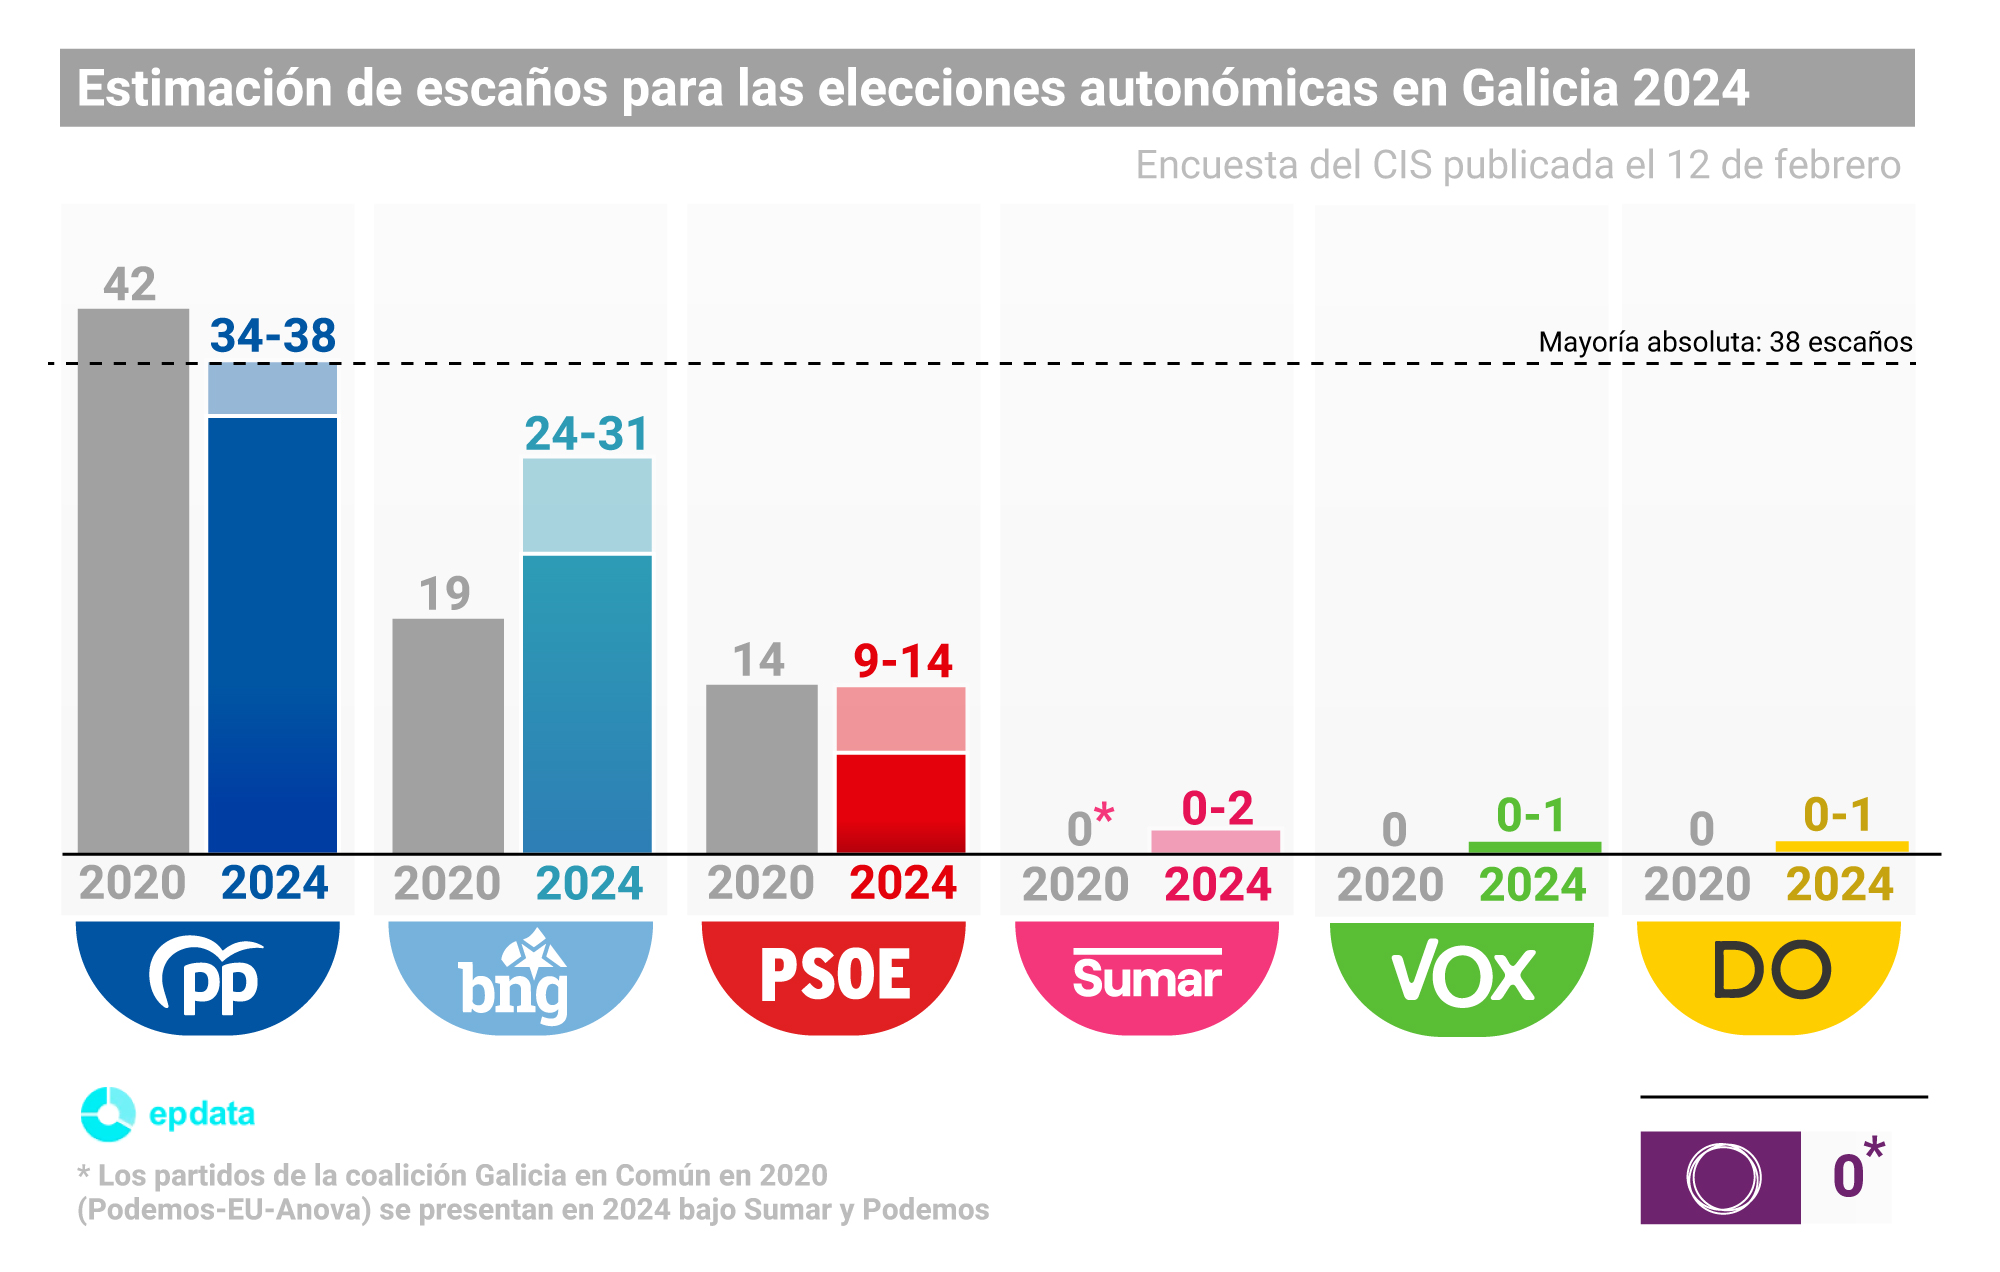 Gráfico con estimación de escaños en la encuesta del CIS para las elecciones autonómicas en Galicia publicado el 12 de febrero de 2024.